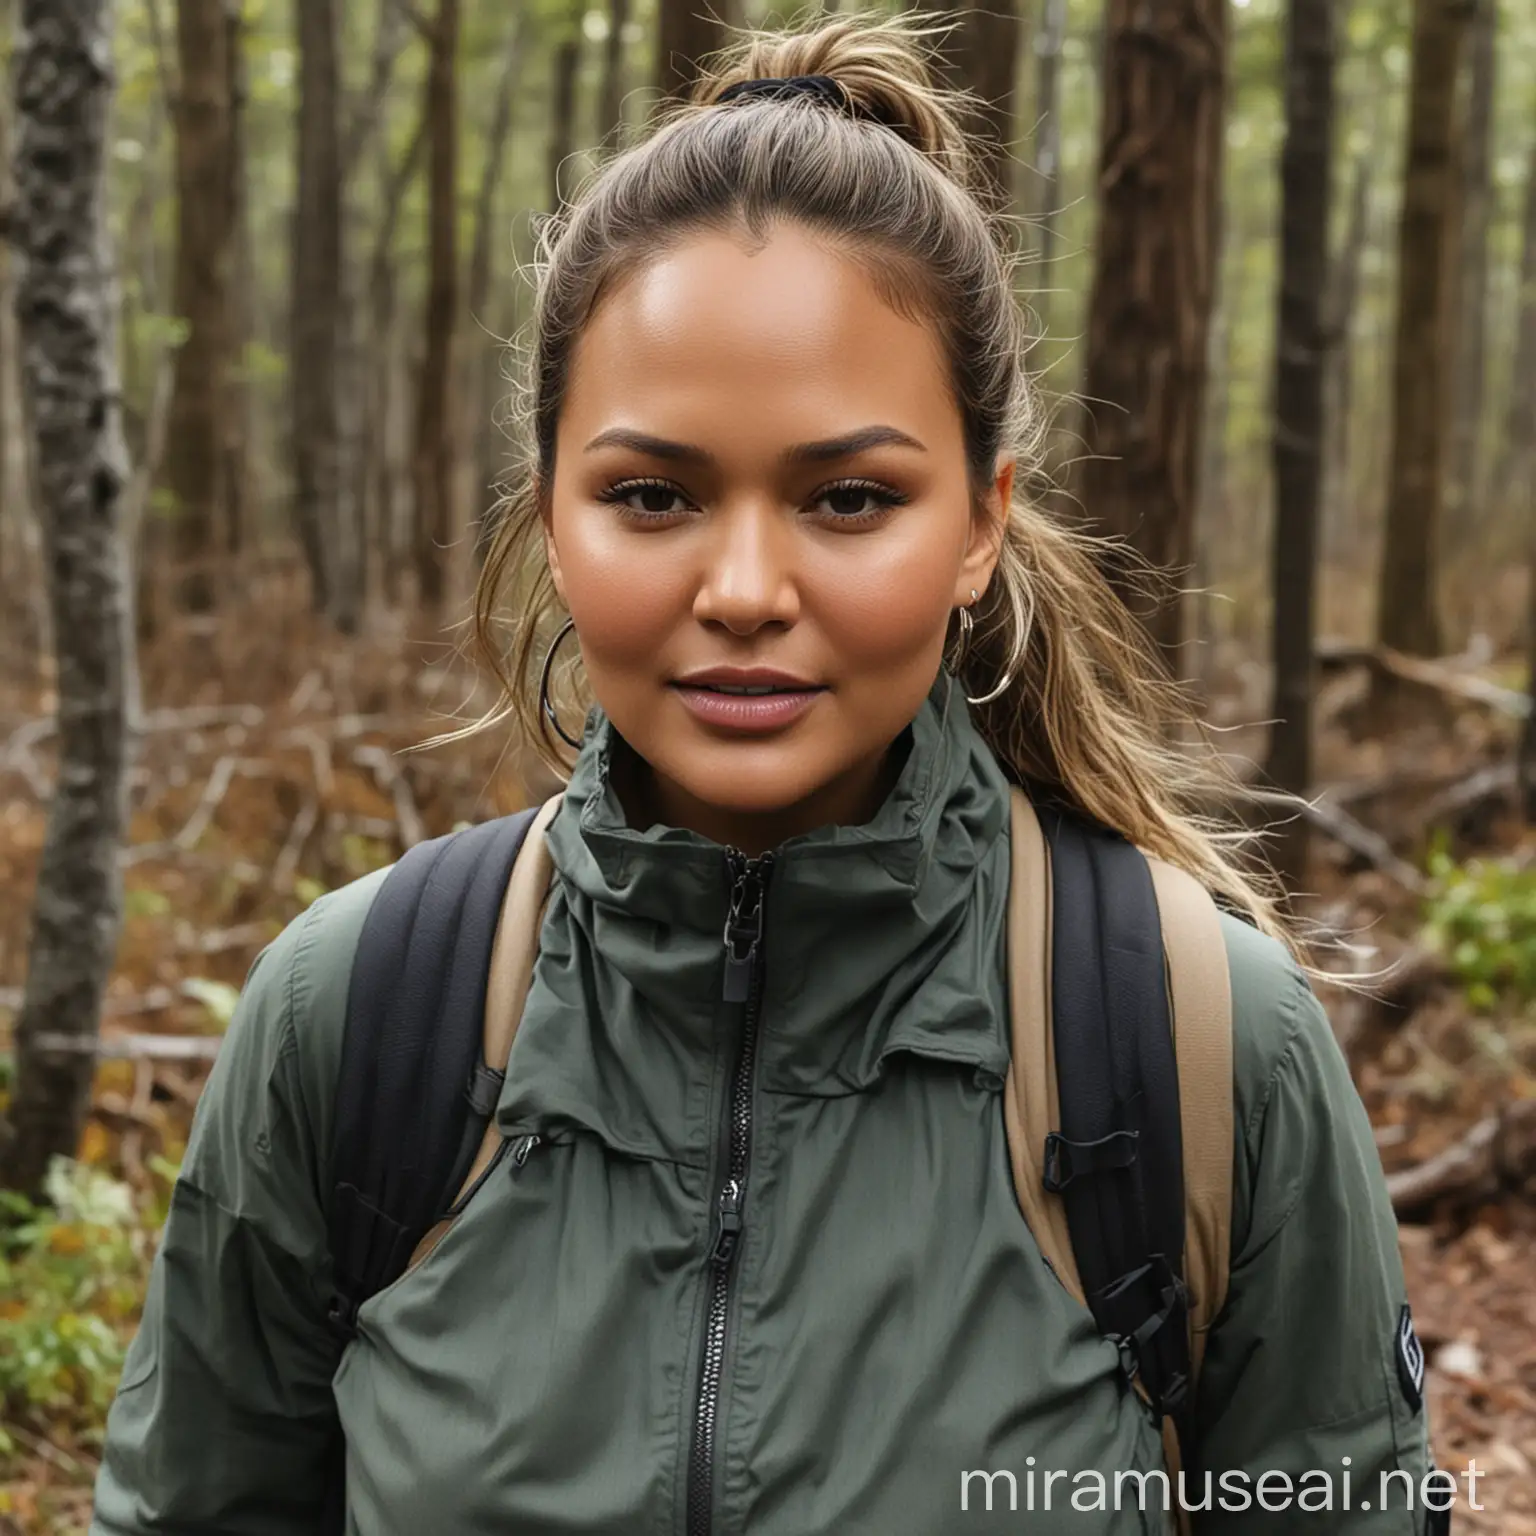 Chrissy Teigen Hiking Portrait in Forest Setting